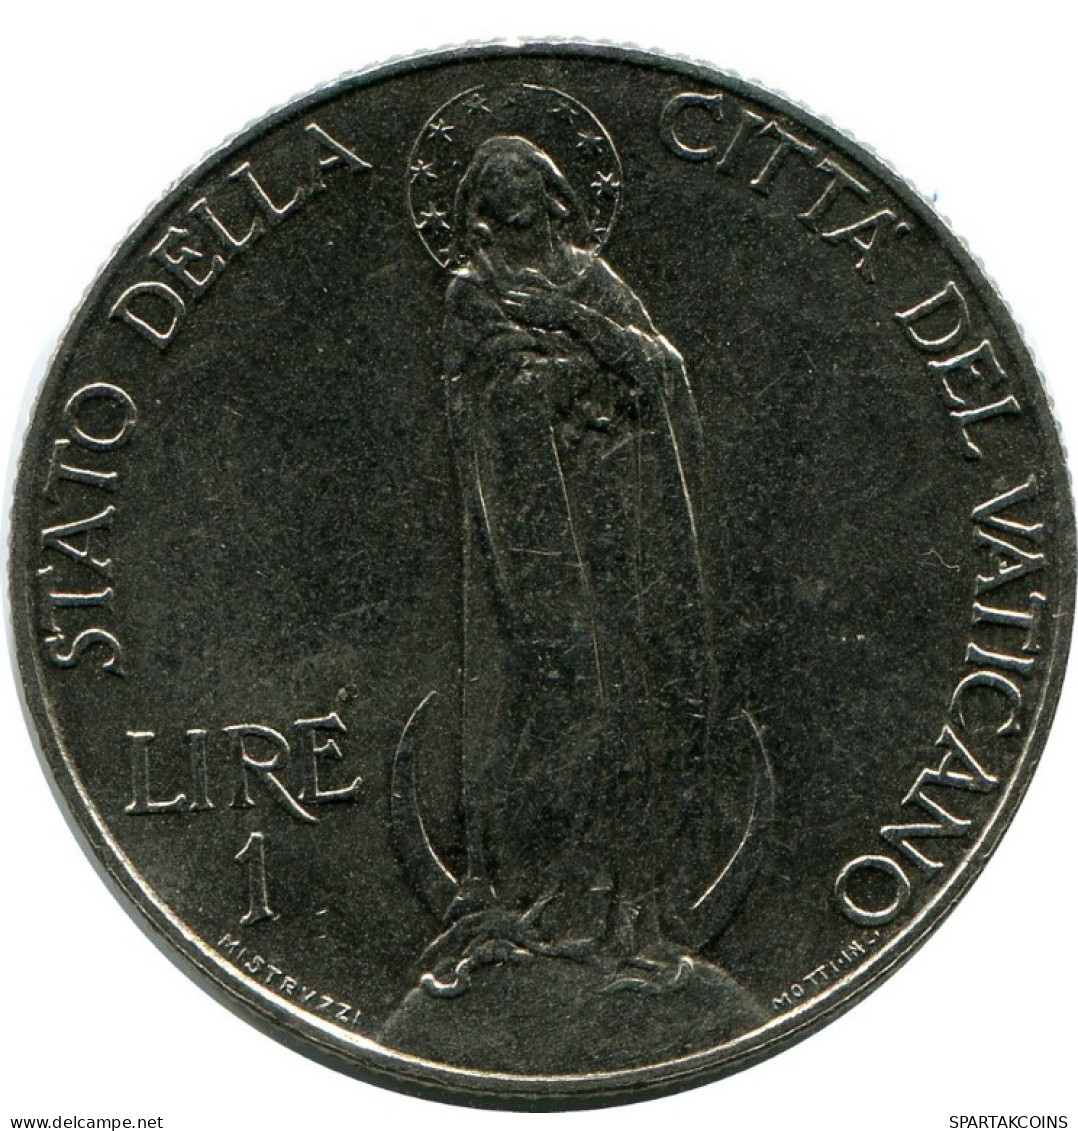 1 LIRE 1936 VATICAN Coin Pius XI (1922-1939) #AH309.16.U.A - Vatikan